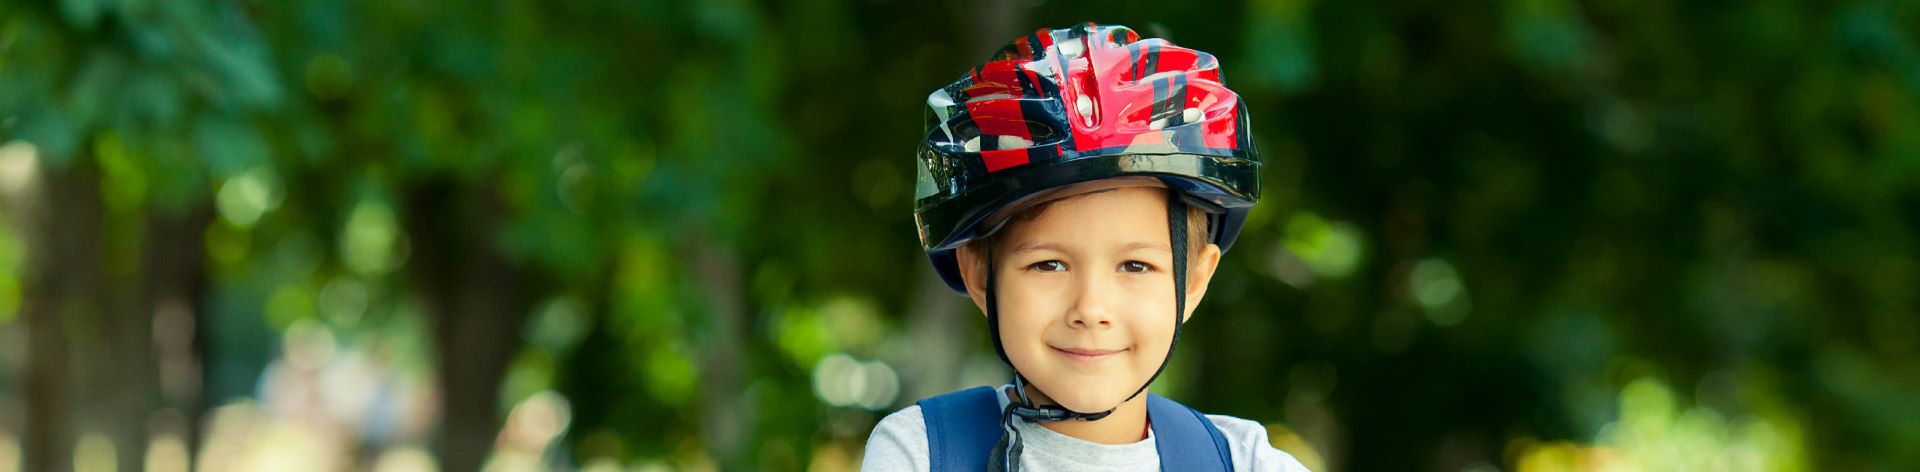 online bike helmets kids